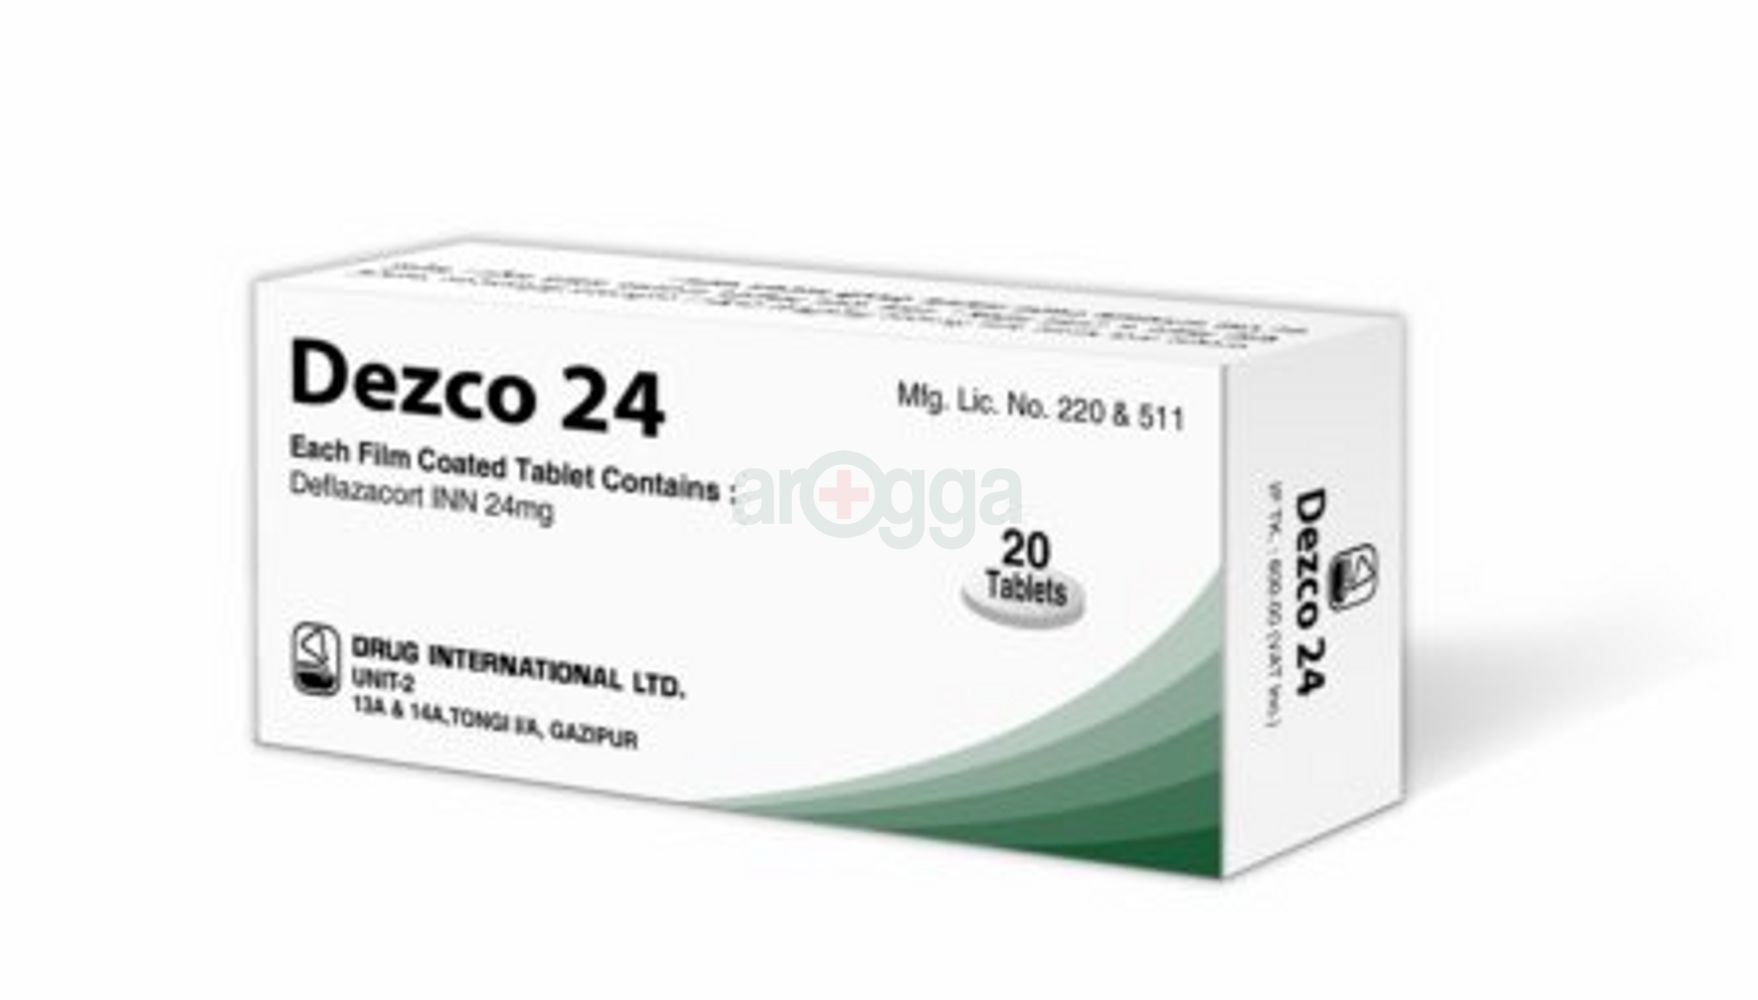 Dezco 24